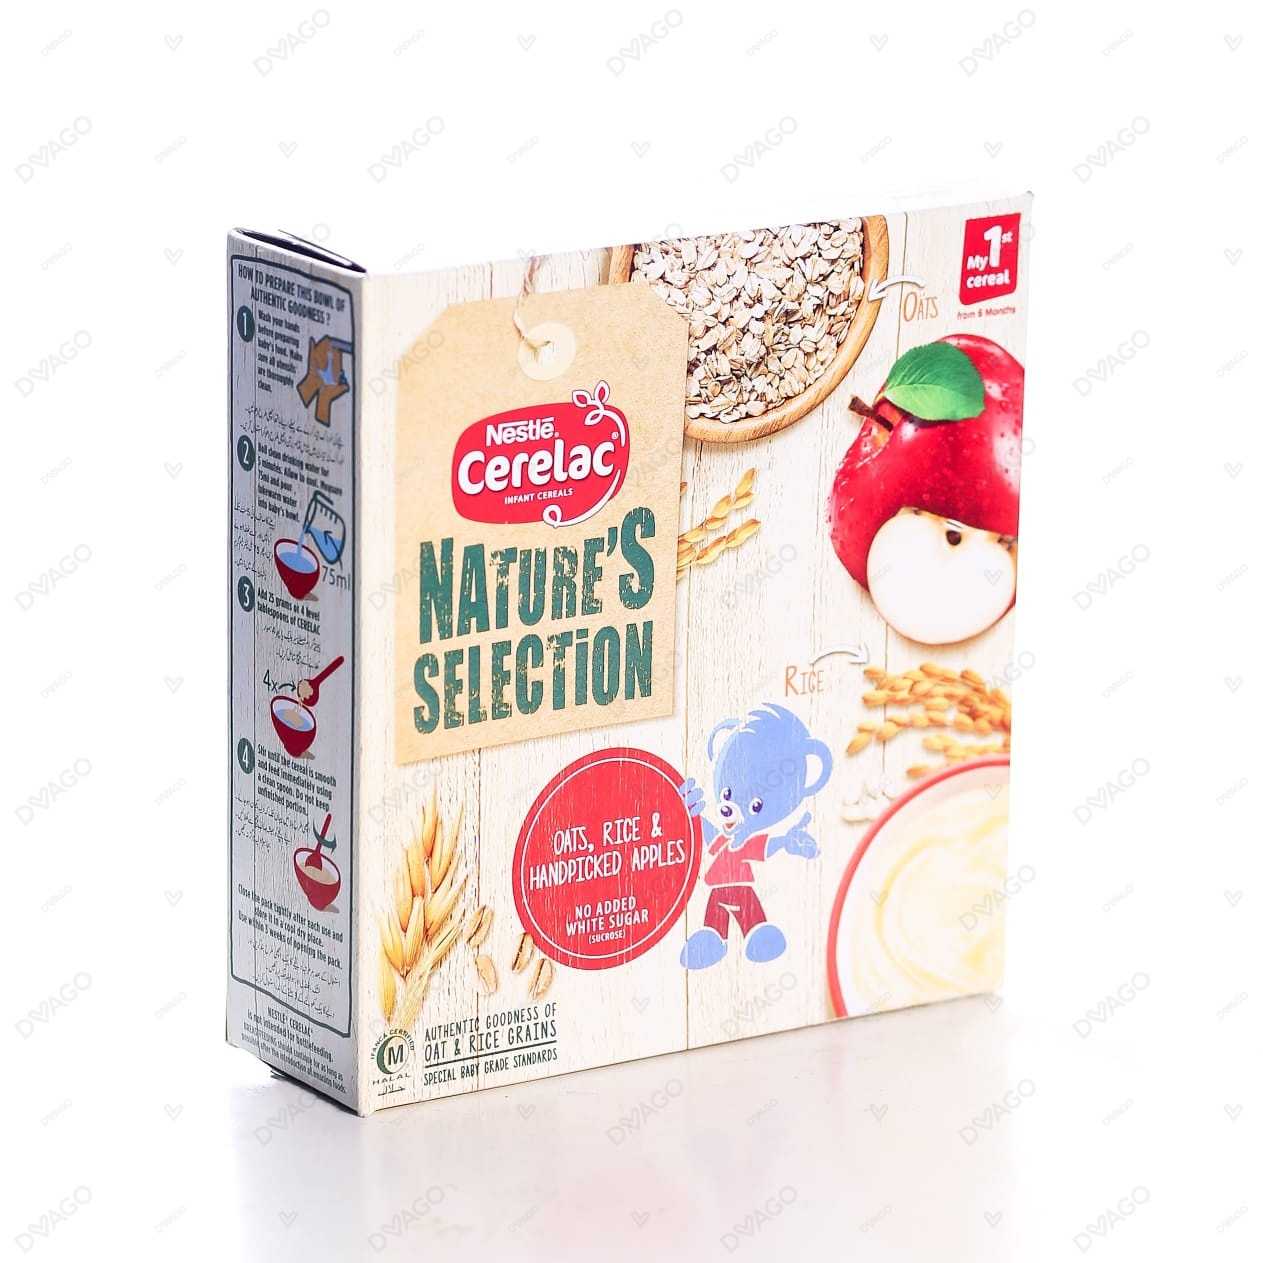 Buy Nestle Cerelac 3 Fruits 350g Online in Pakistan